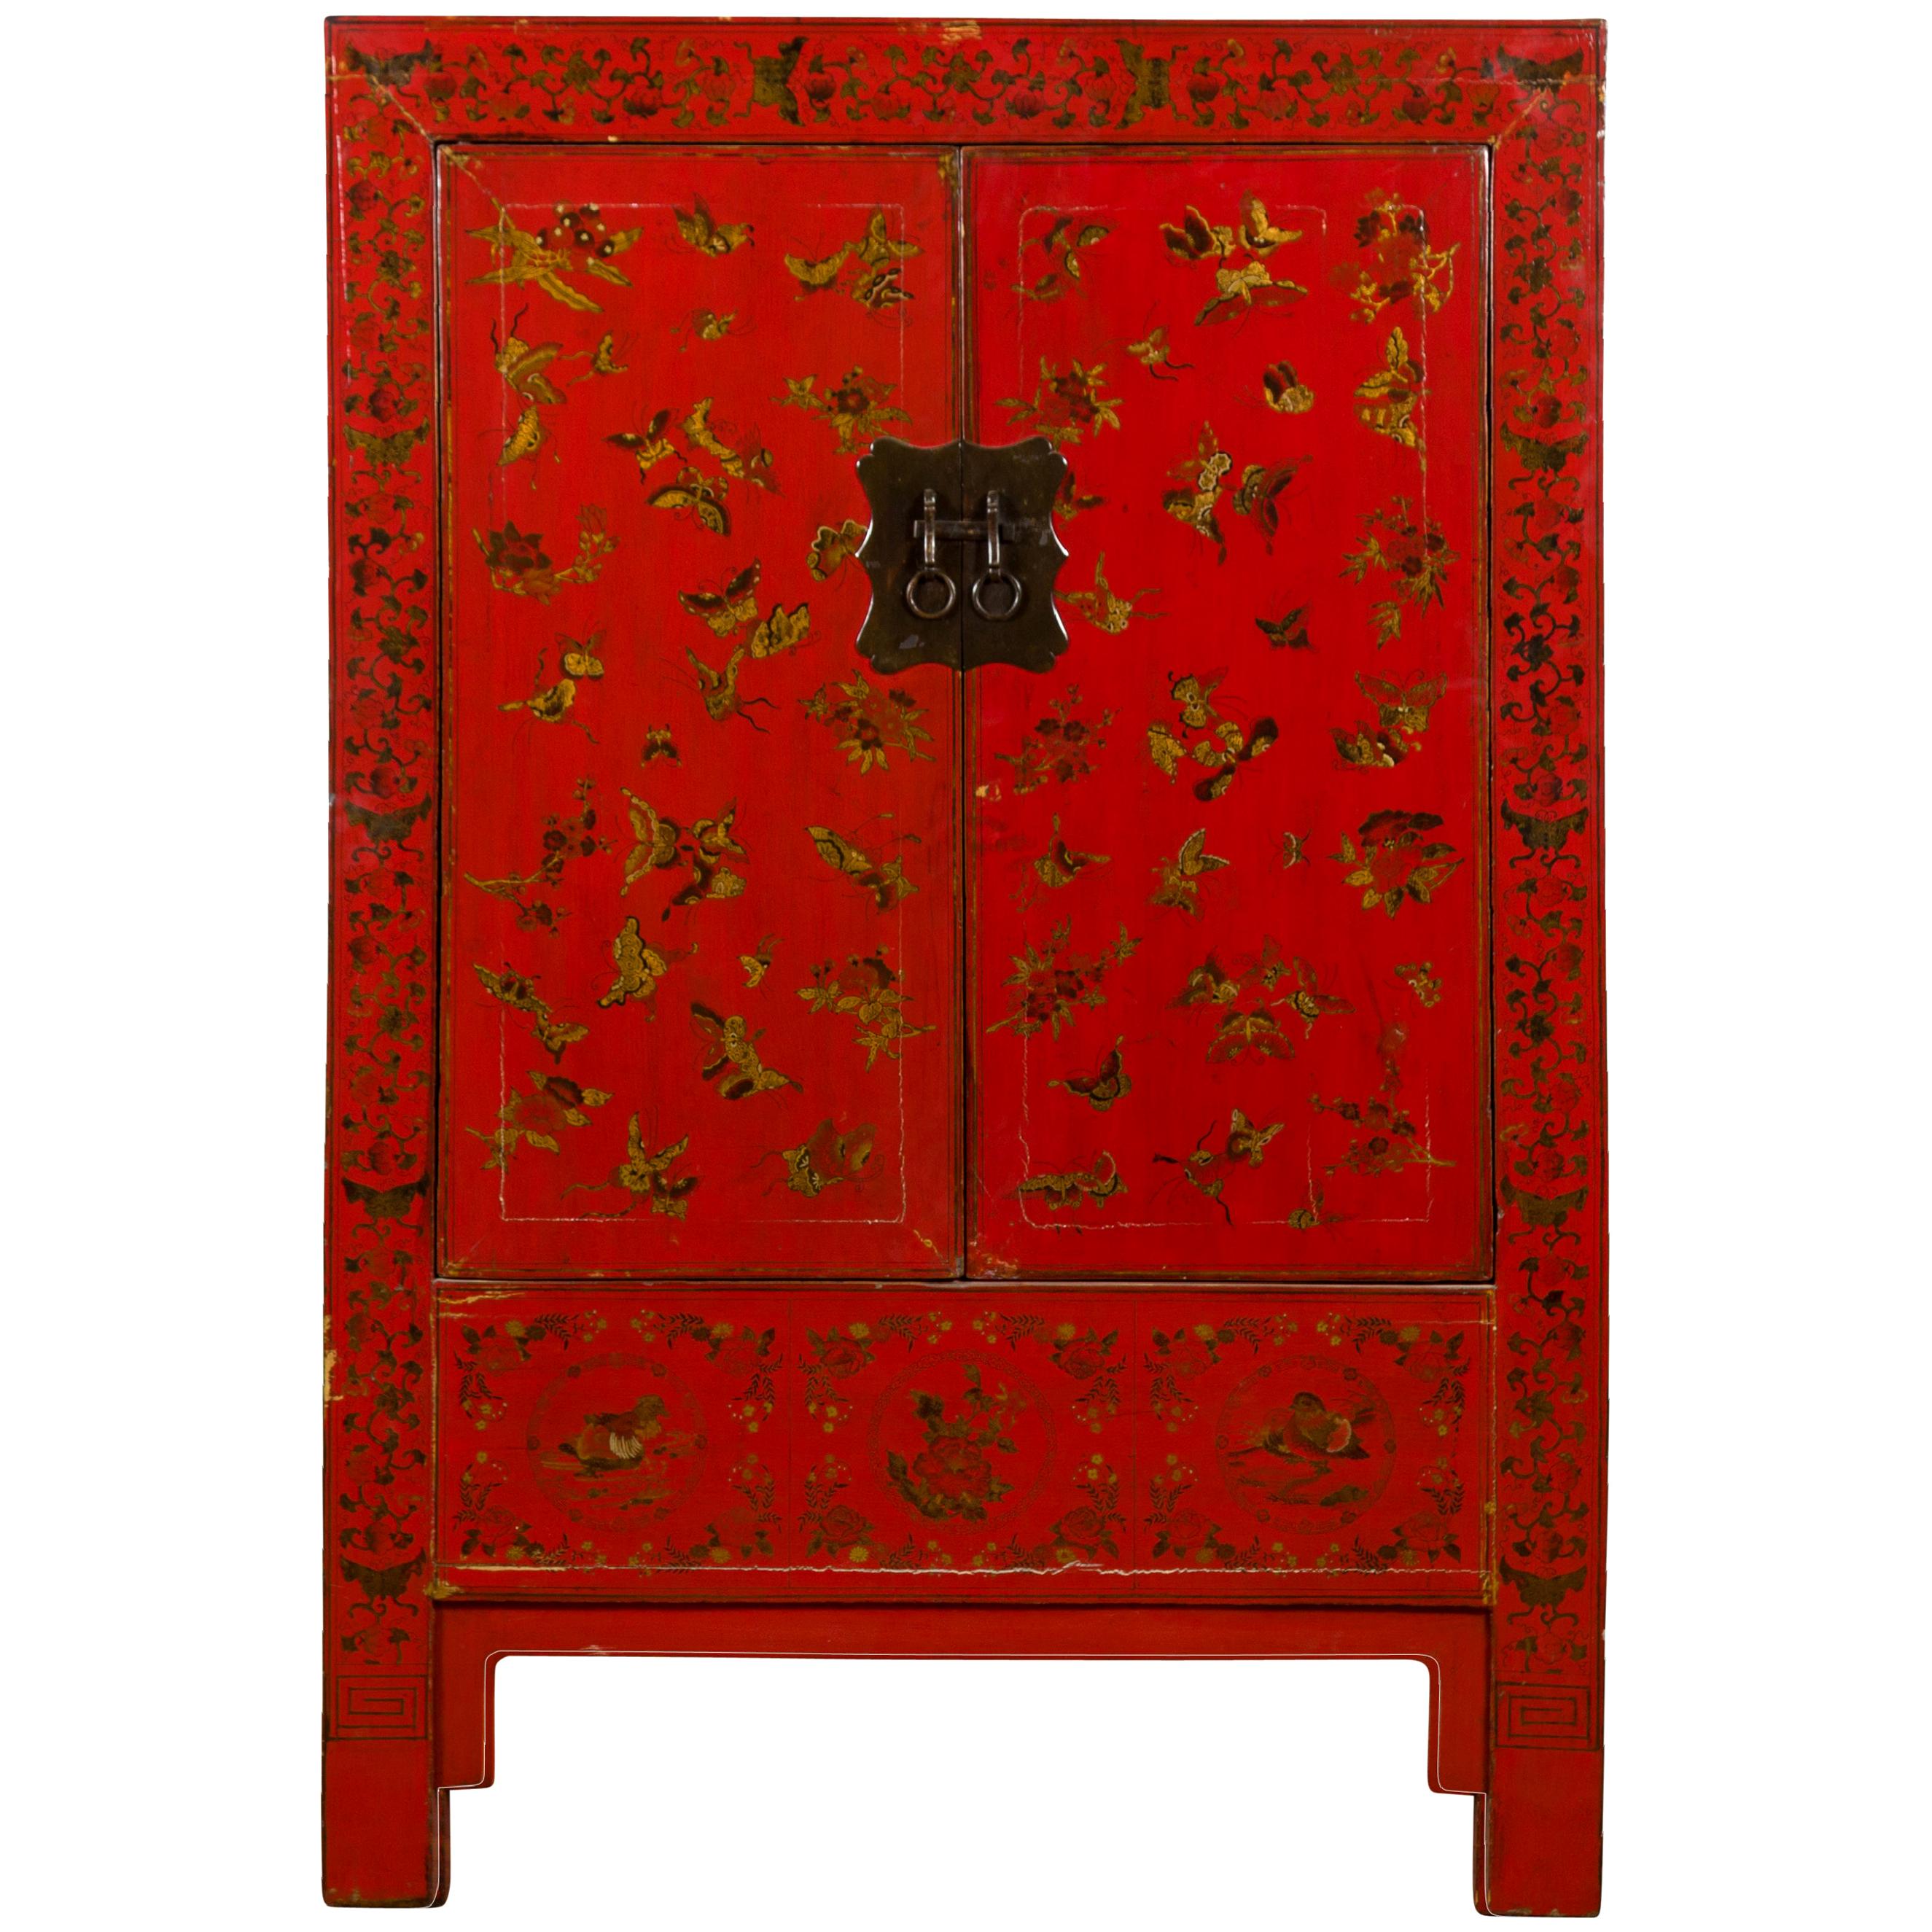 Chinesischer rot lackierter chinesischer Schrank aus der Qing-Dynastie des 19. Jahrhunderts mit vergoldeten Chinoiseries